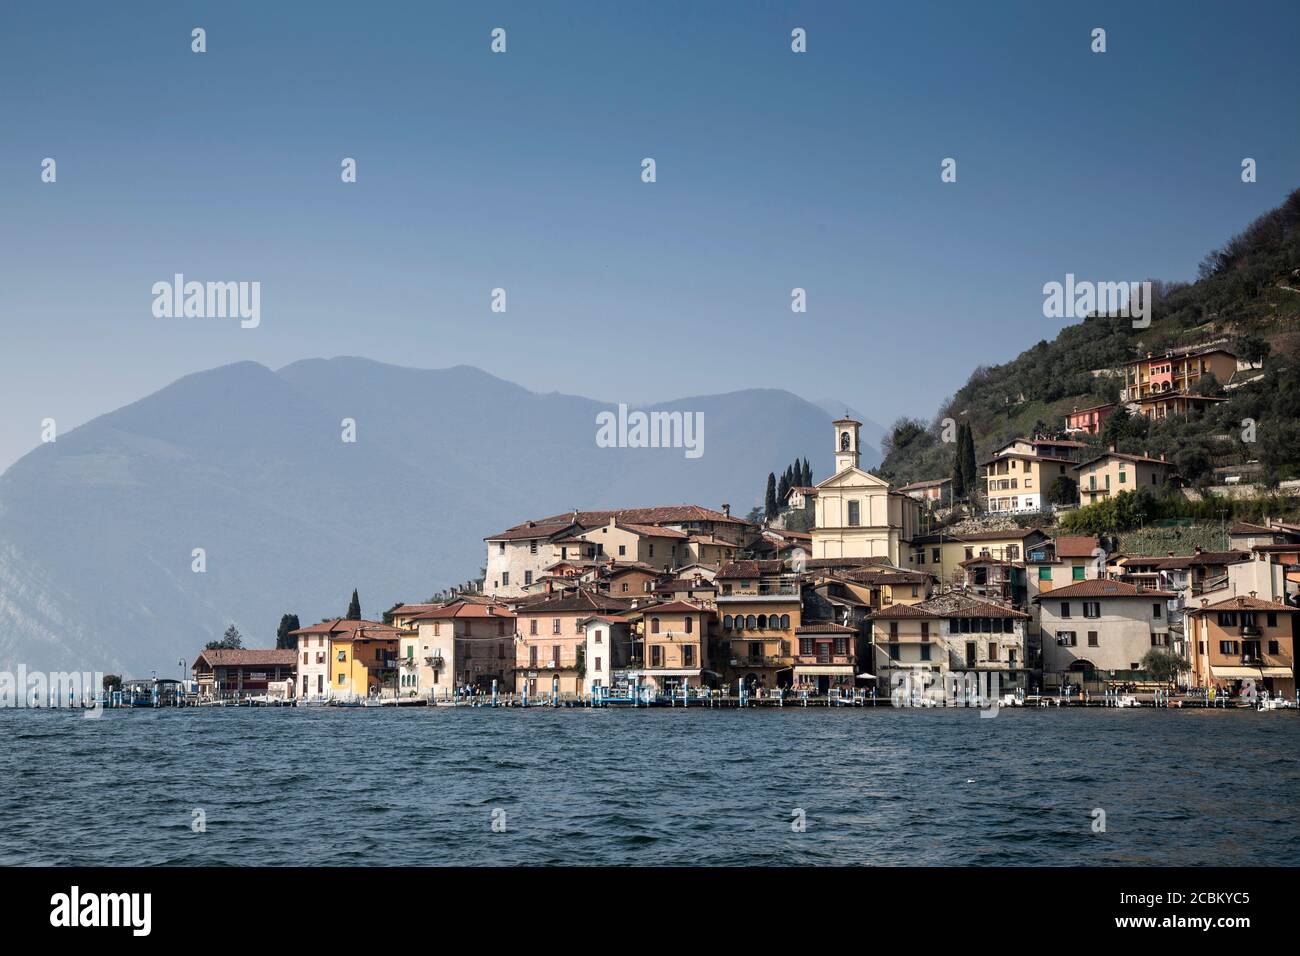 Edifici sul lungomare, Lago d'Iseo, Lombardia, Italia Foto Stock